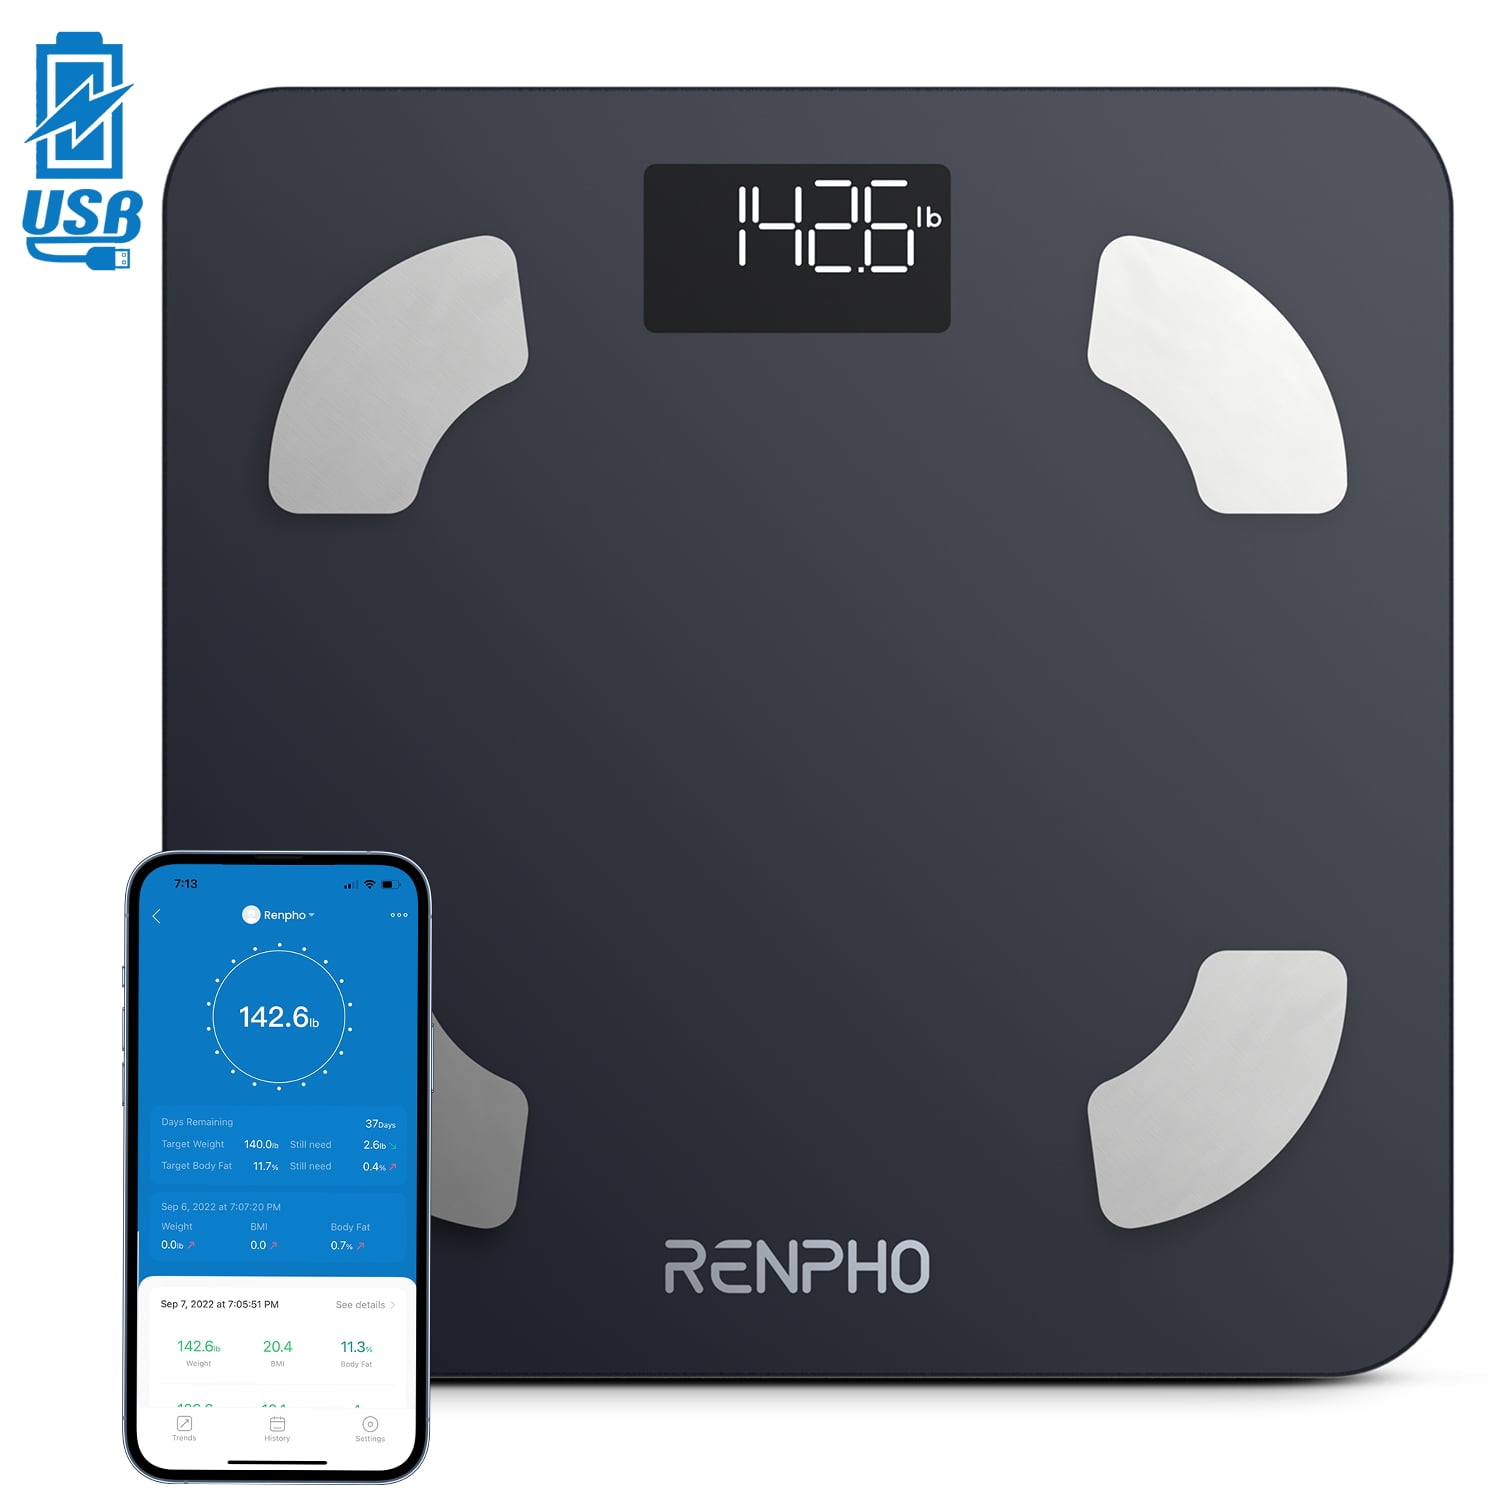 Best Buy: Conair Weight Watchers Bluetooth Body Analysis Scale Black WW930XF